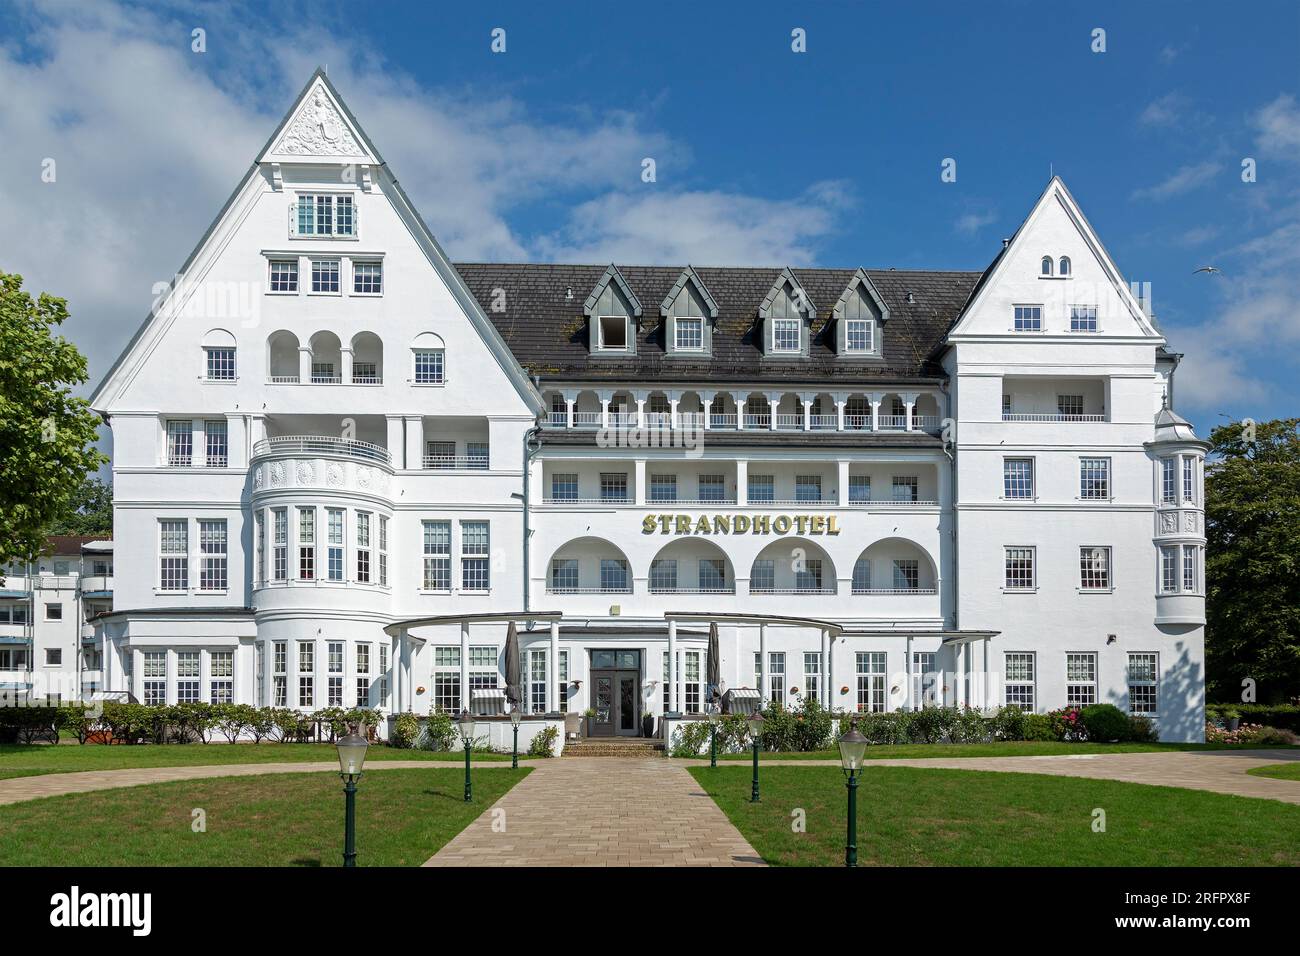 Strandhotel, Glücksburg, Schleswig-Holstein, Germany Stock Photo